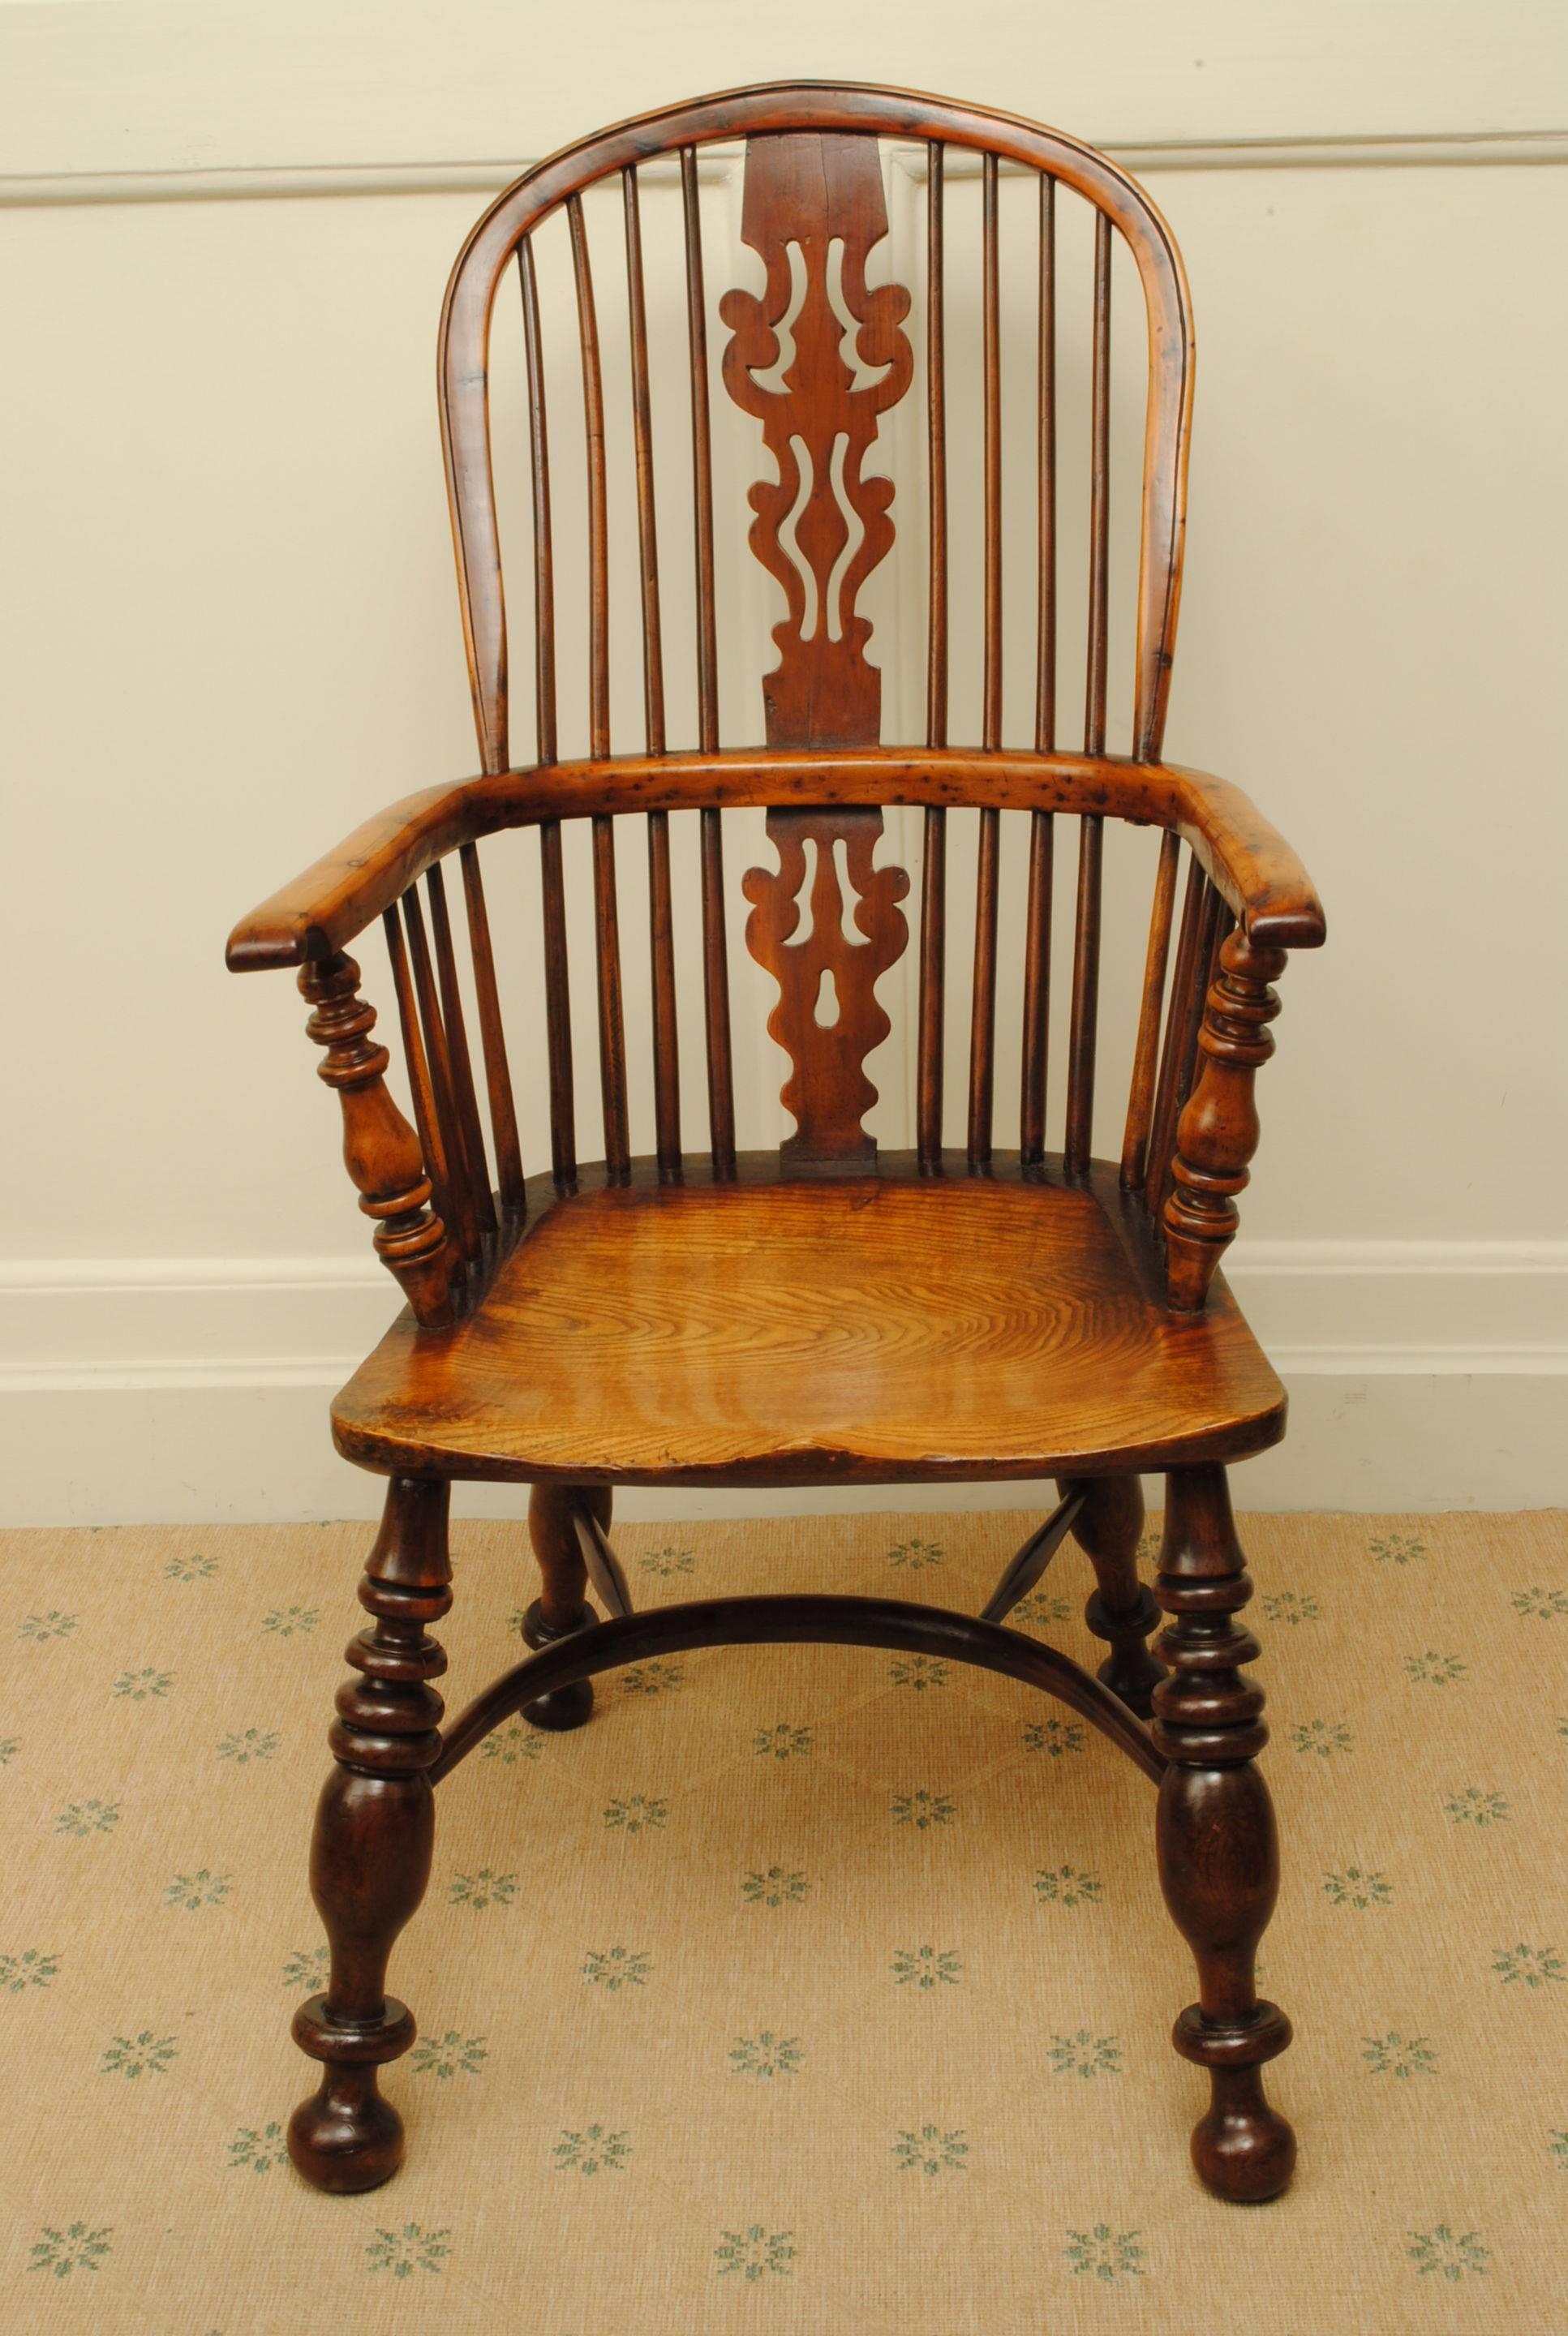 Un grand et audacieux exemple d'un fauteuil Windsor en if et orme de Nottingham avec de bons pieds forts et un siège en orme si bonne couleur.
C'est l'un des fauteuils les plus audacieux que j'ai jamais vu.